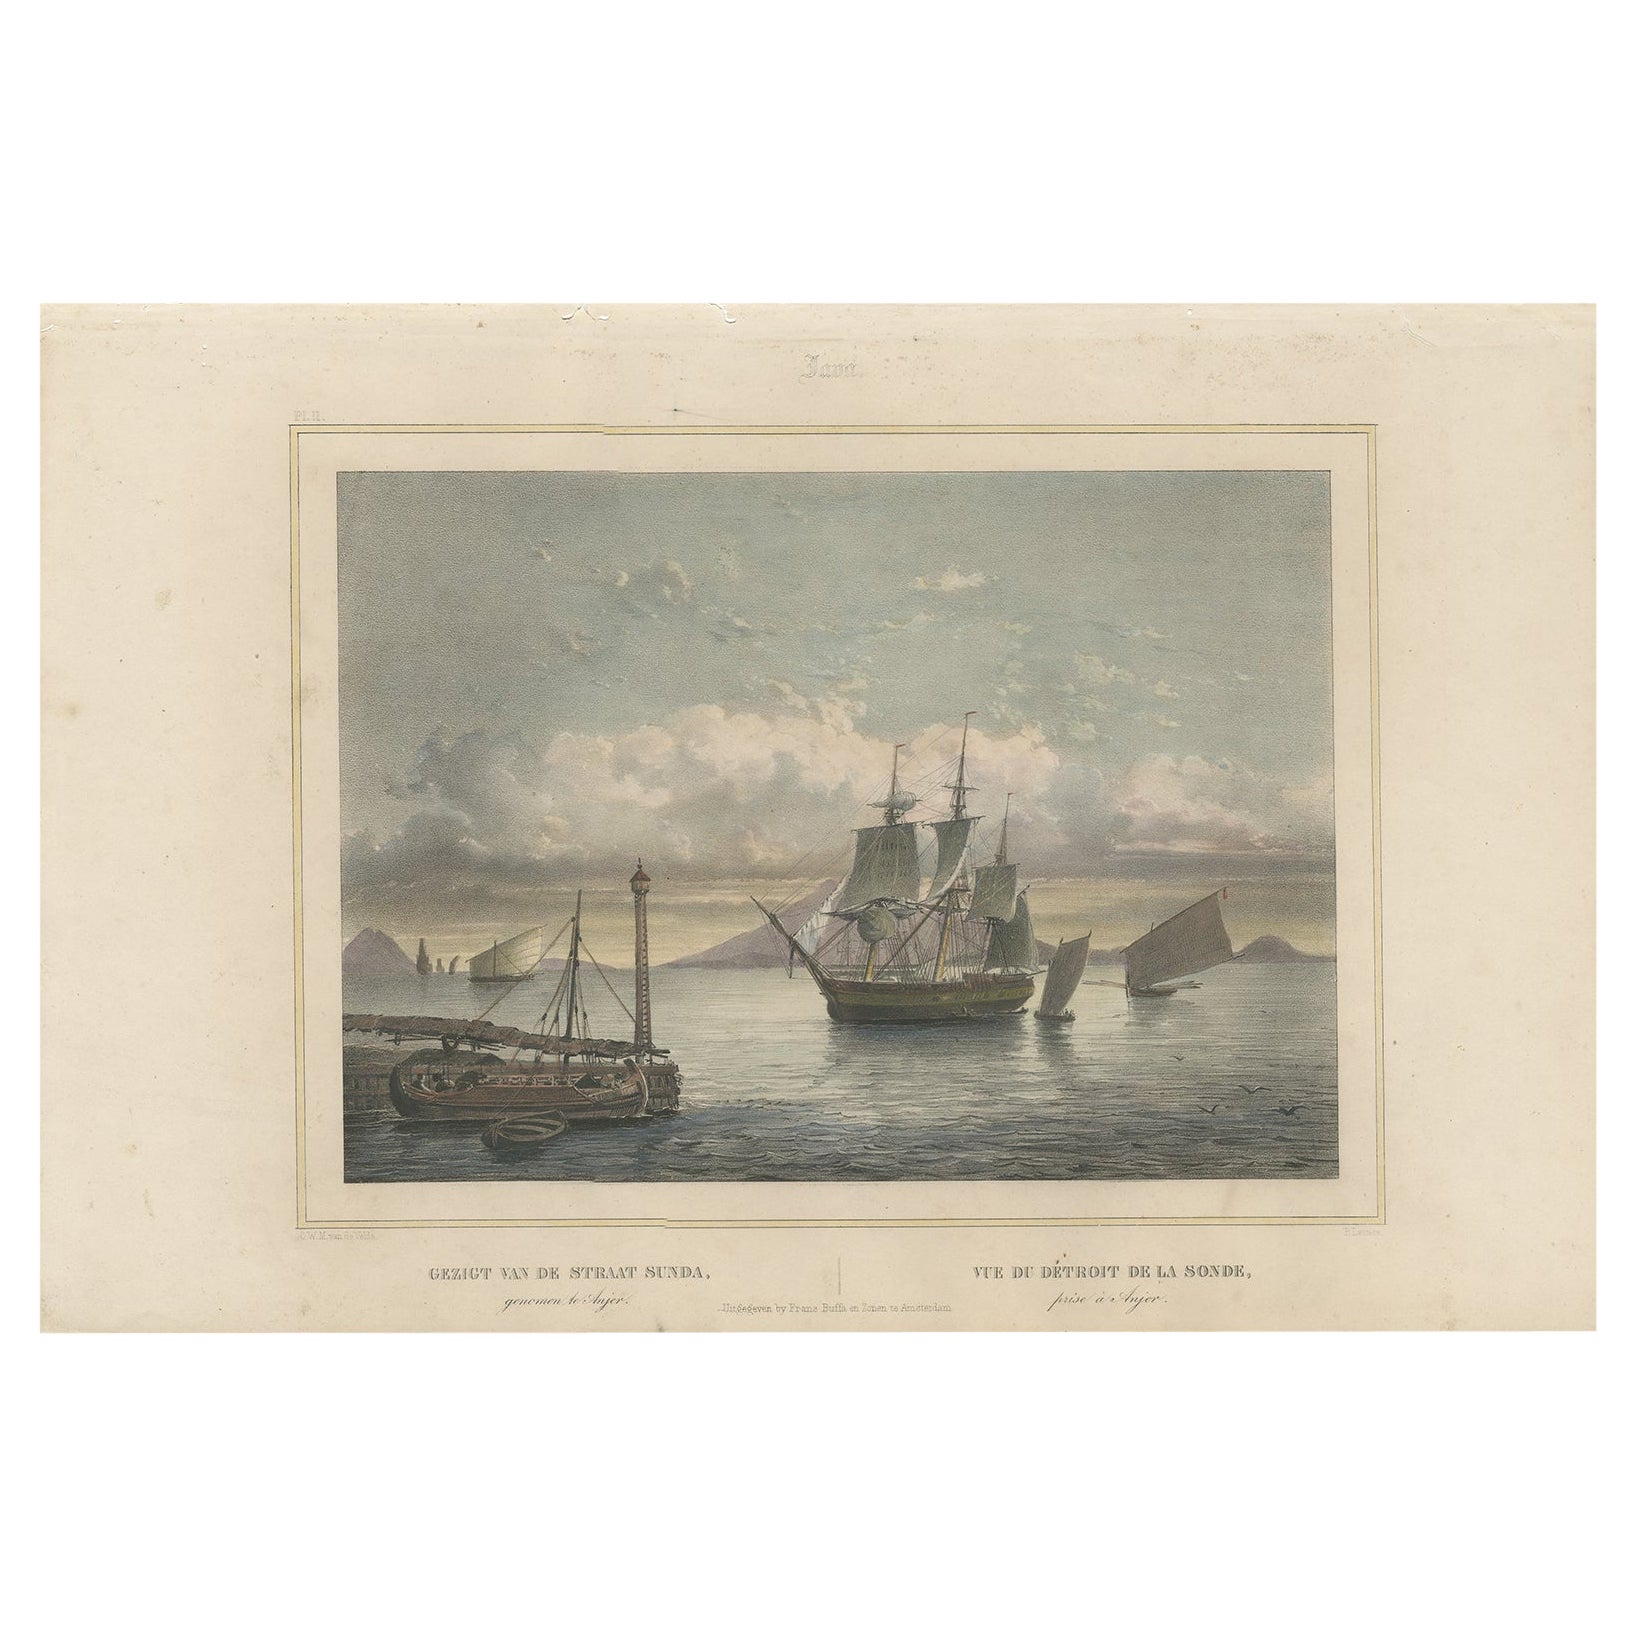 Old Print von Schiffen in der Nähe von Anyer & Krakatoa in den Sunda Straits, Indonesien, 1844